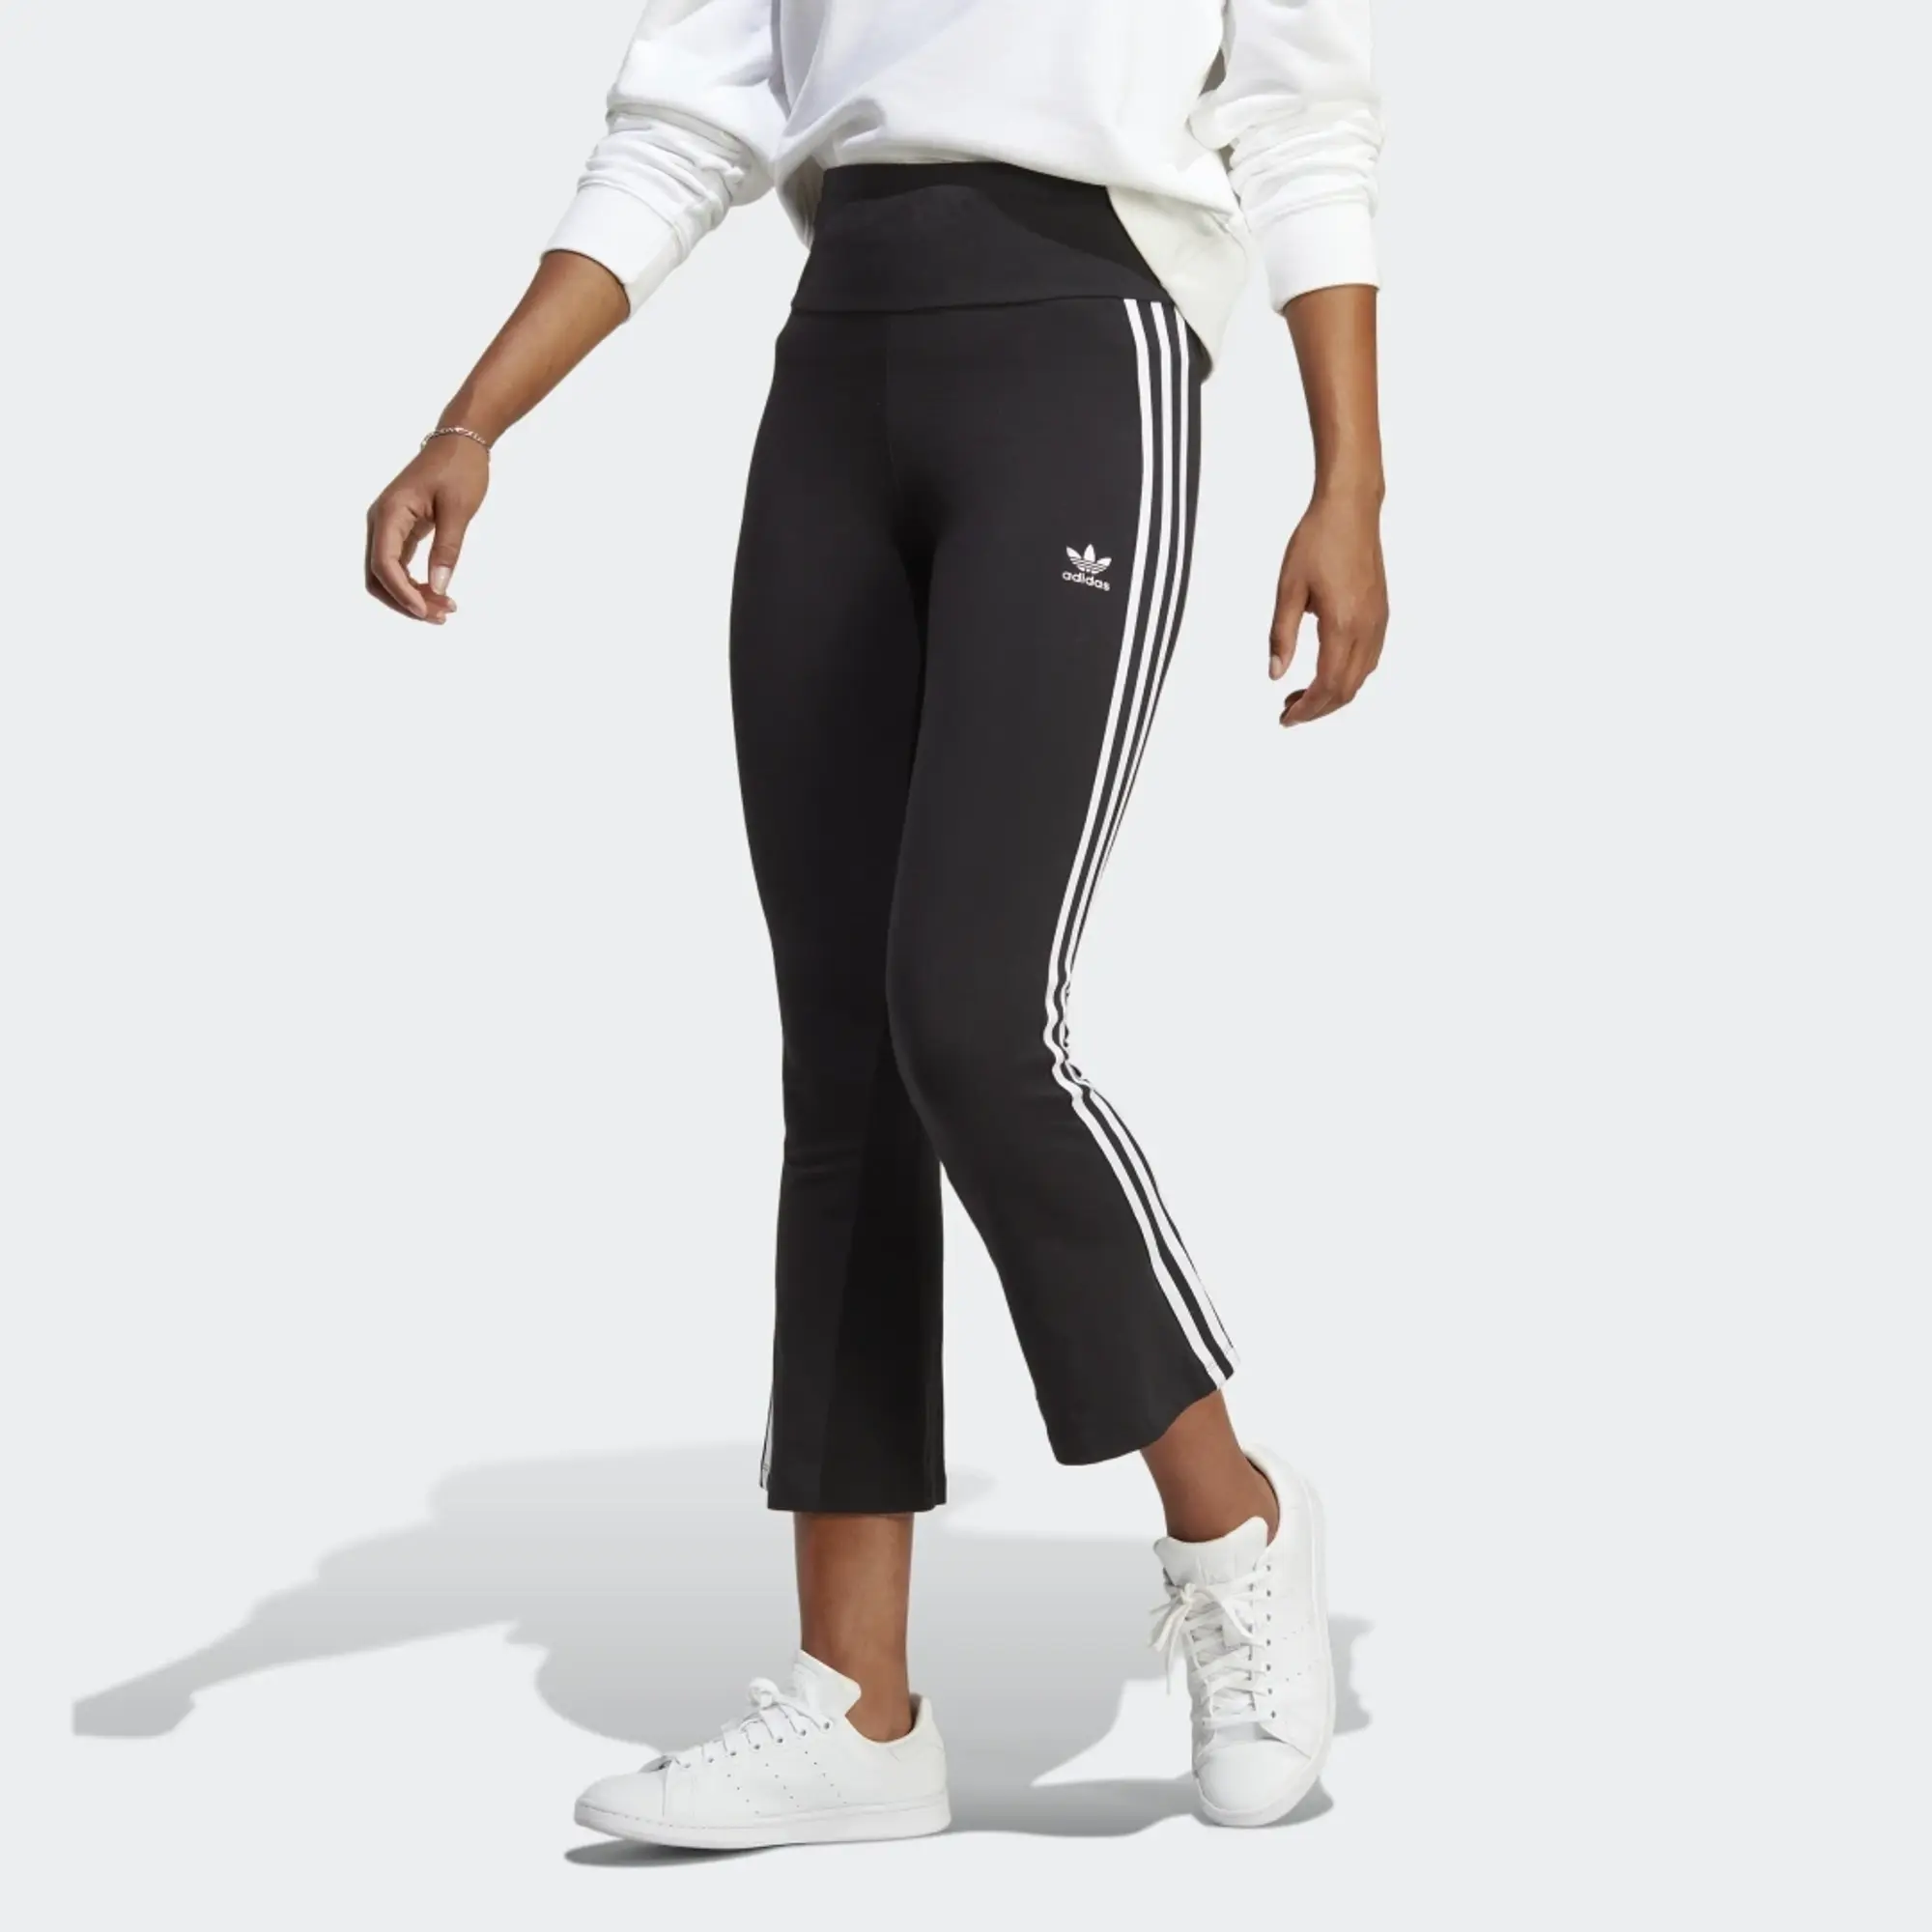 Adidas Originals Adicolor Classics 3-stripes Leggings - Womens in Black